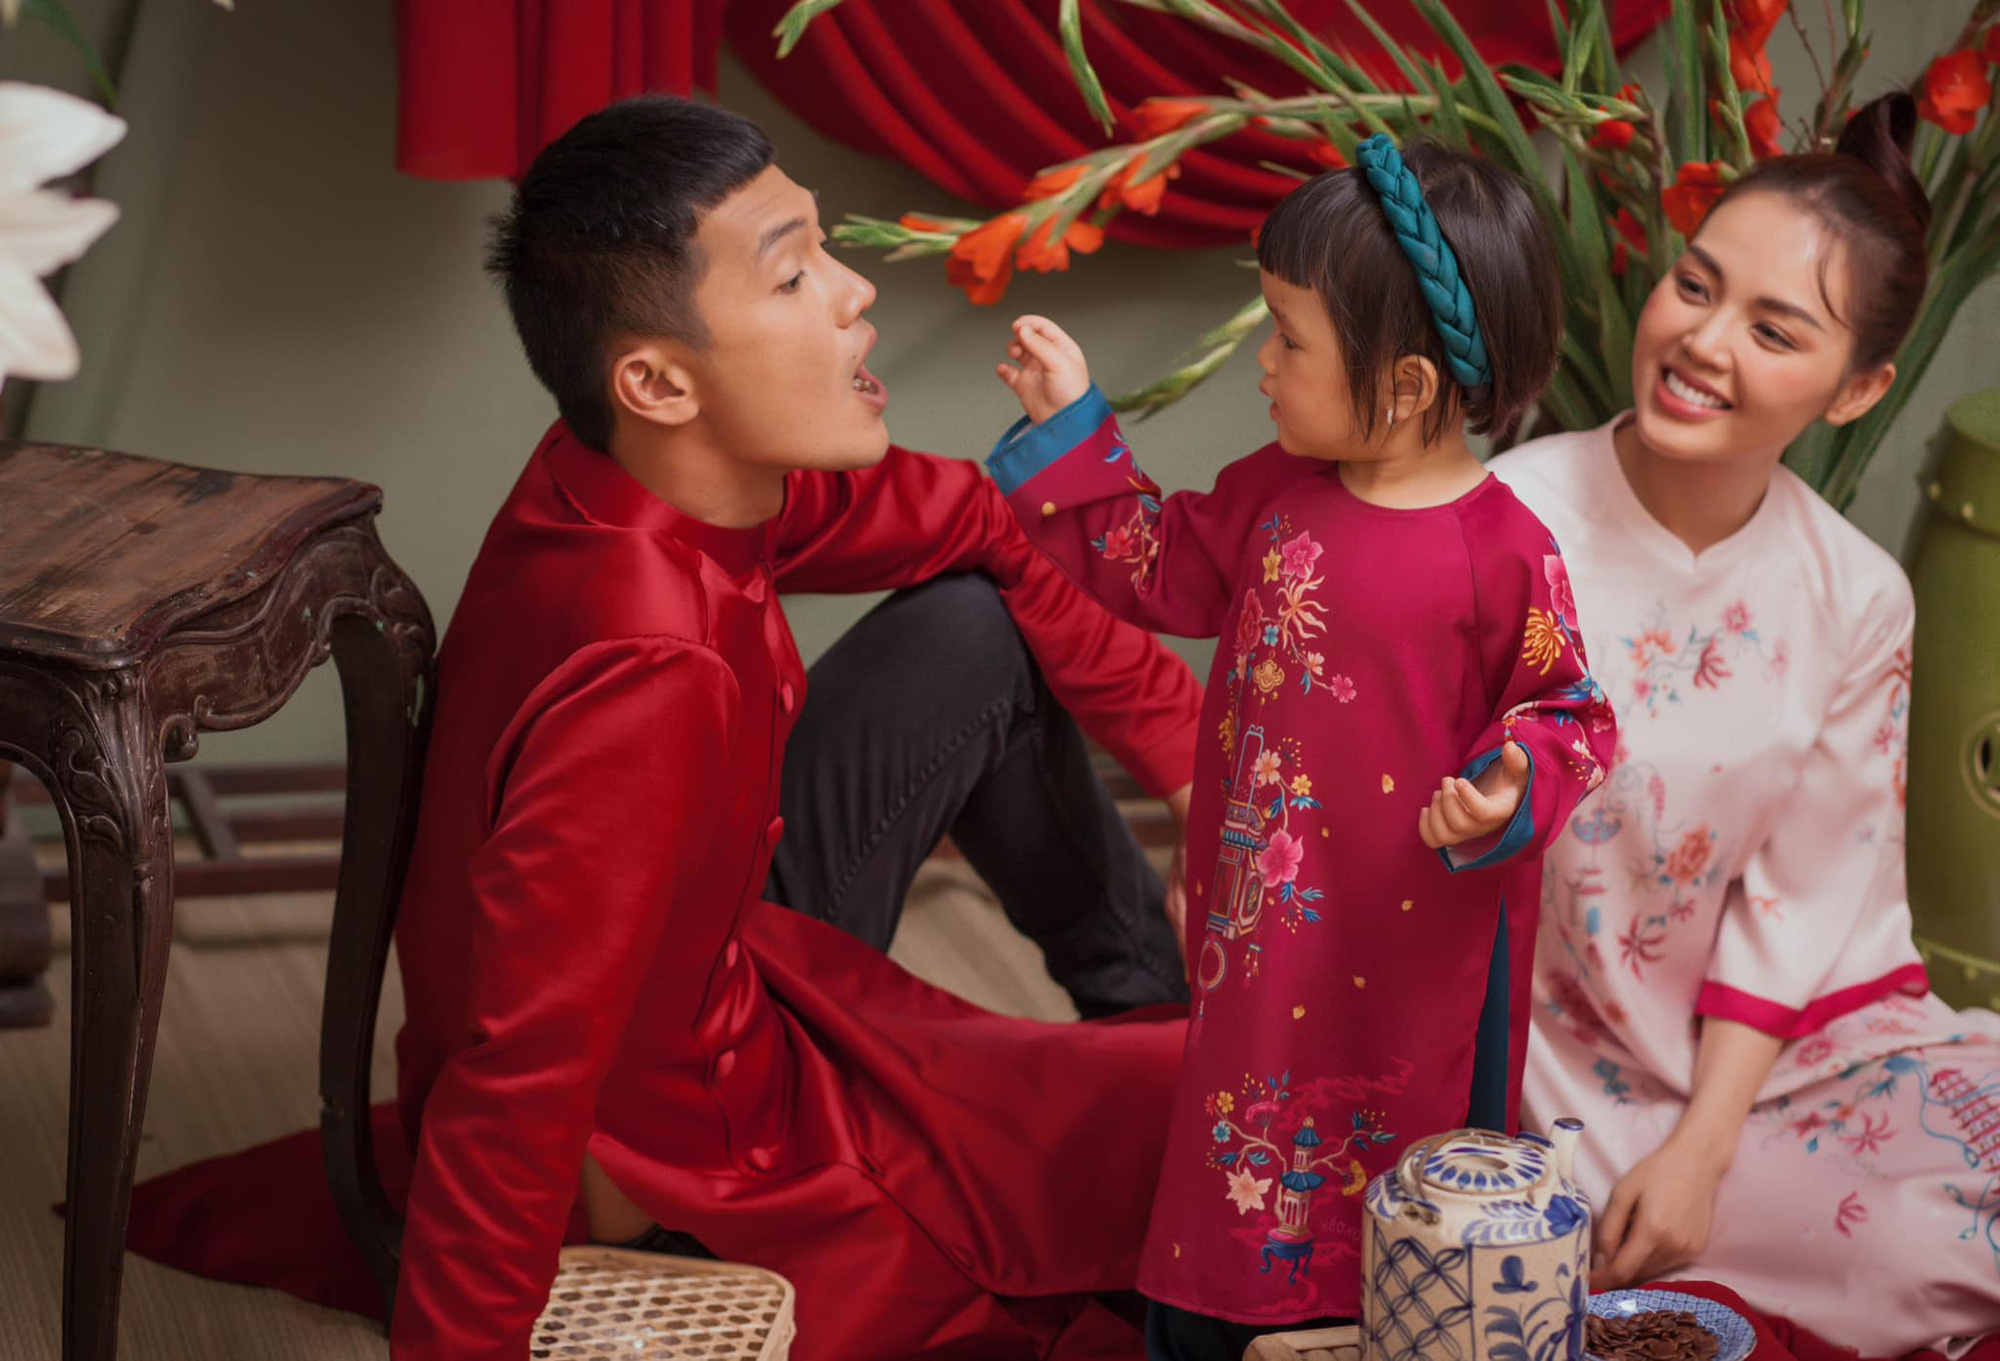 Hôn nhân của diễn viên Quang Tuấn: Ở nhà, vợ là người đứng đầu về kinh tế - Ảnh 8.